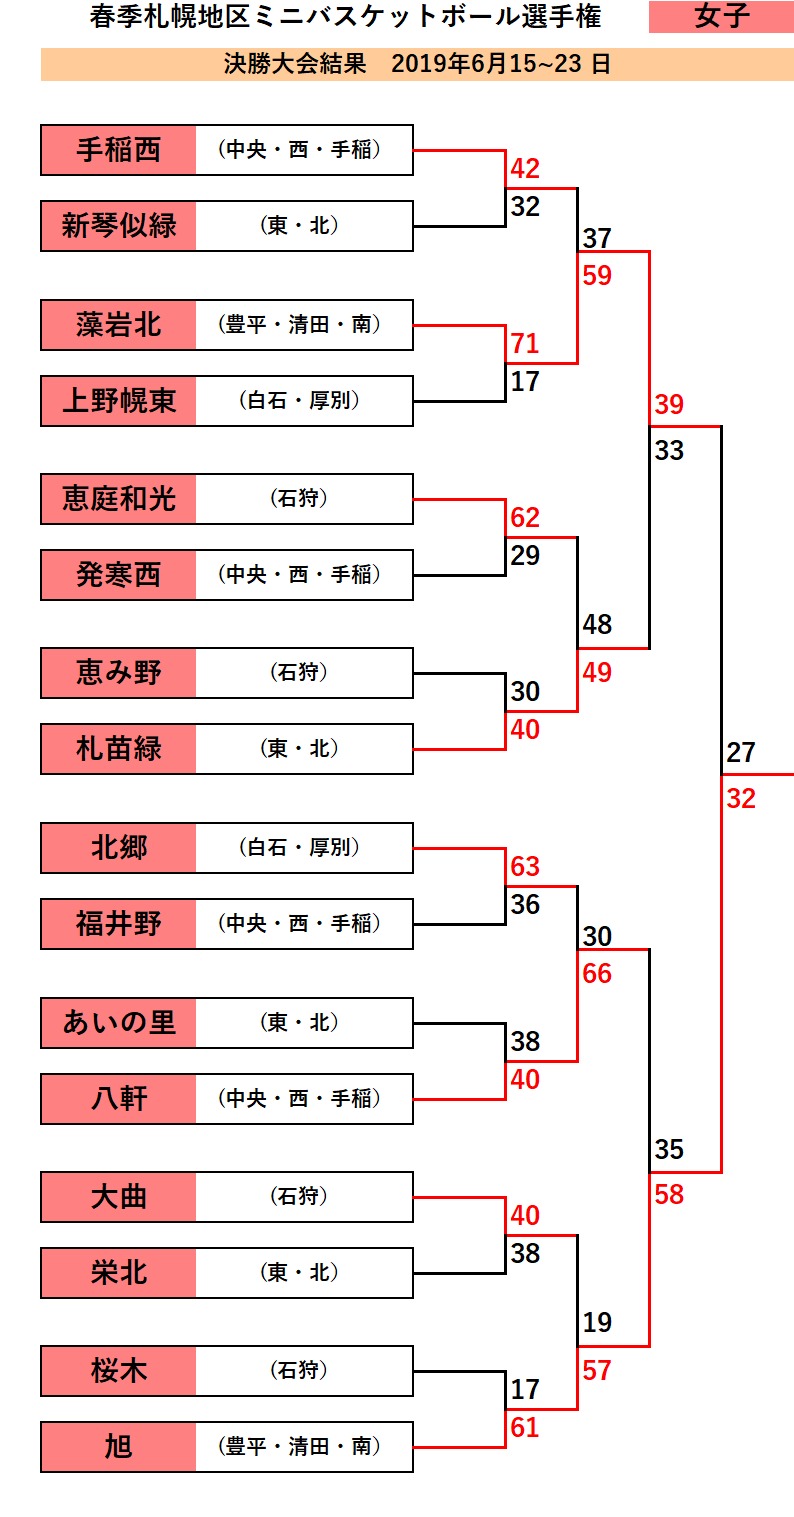 春季札幌地区ミニバス選手権 優勝は男子が あいの里 女子が 旭 バスケットボールキング